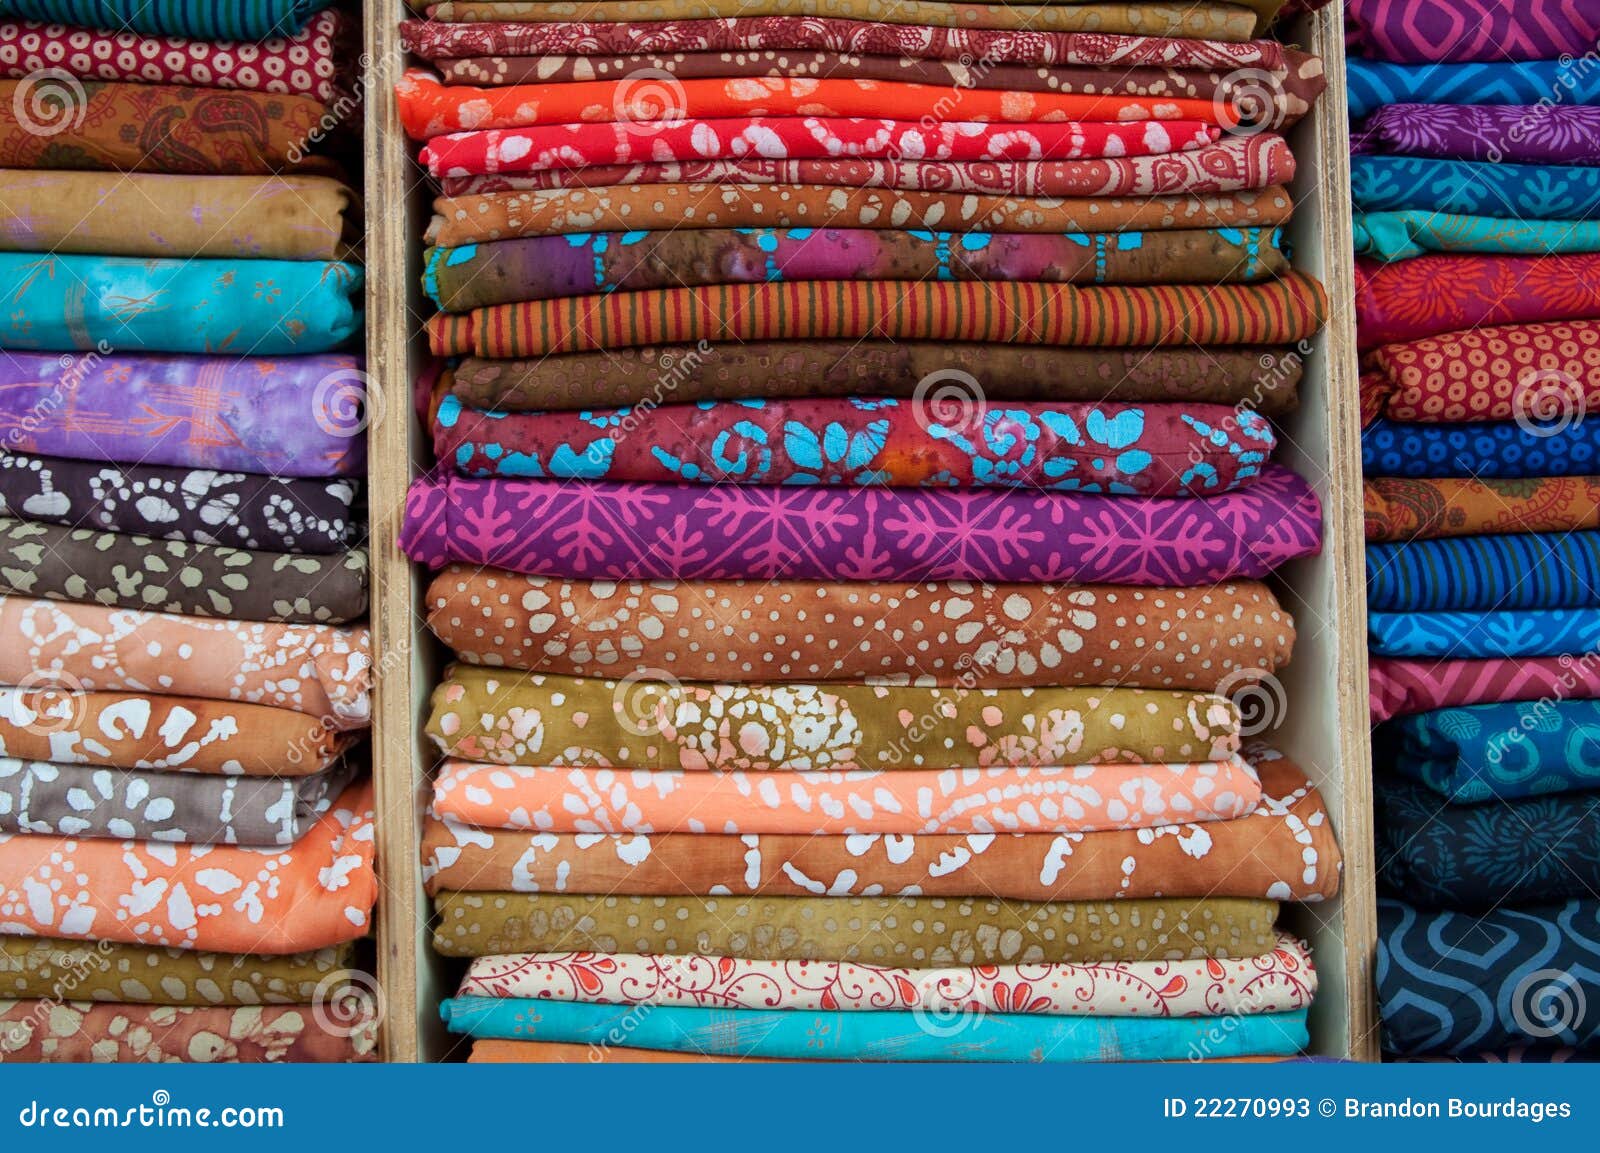 Voorkeursbehandeling Vacature Schuur Indian Fabrics for Sale stock image. Image of fabric - 22270993